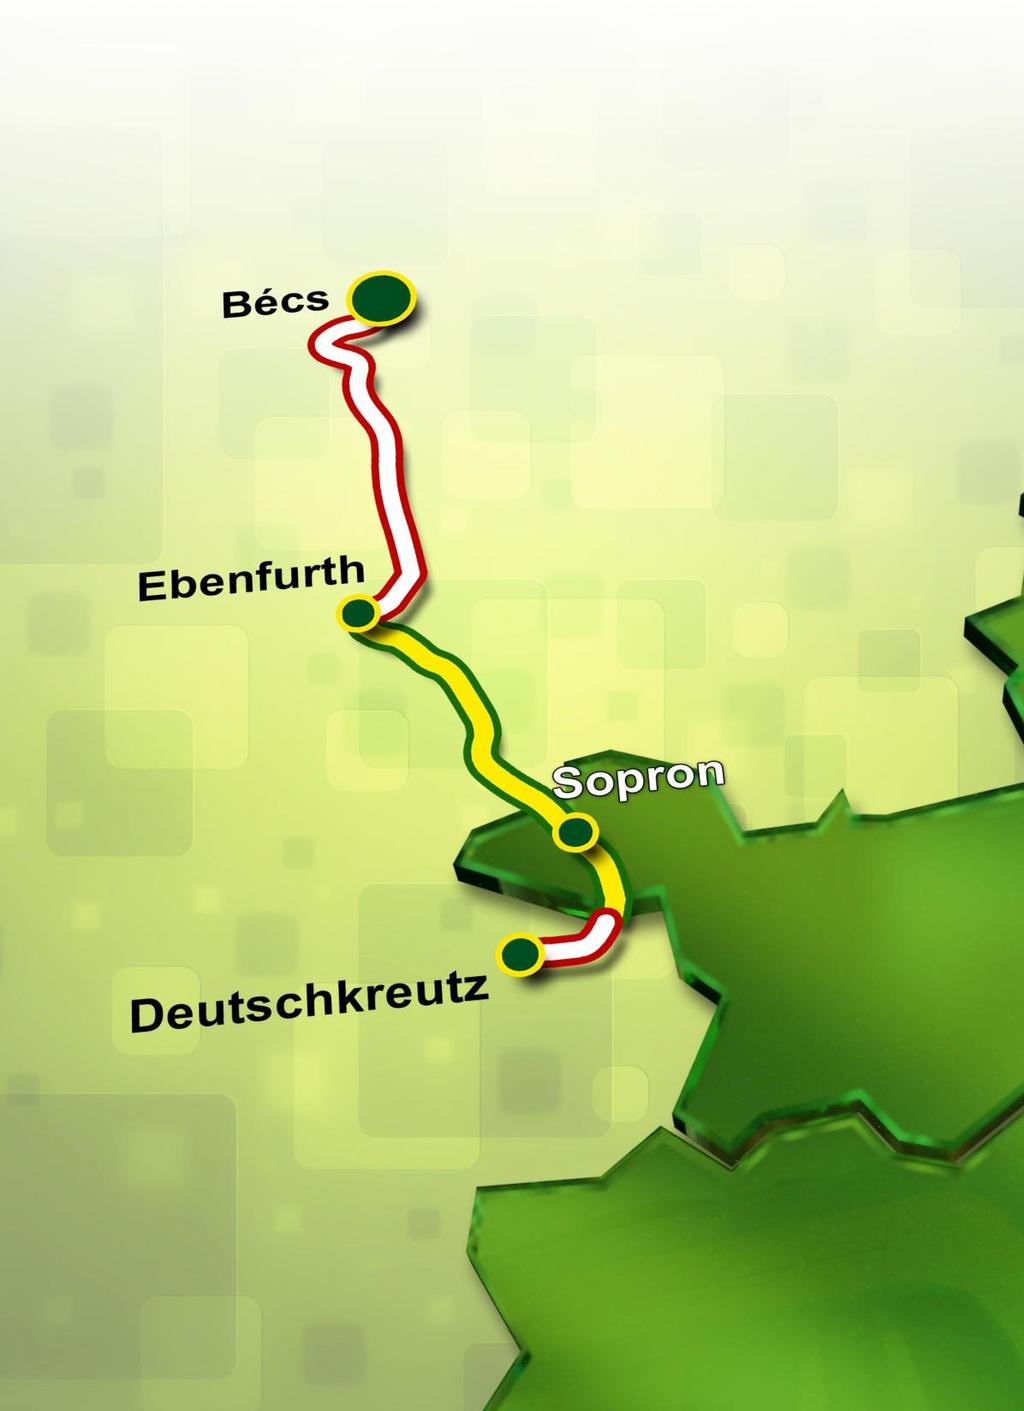 A Bécs-Sopron-Deutschkreutz viszonylat Megrendelő: osztrák állam és Burgenland tartomány (VOR-on keresztül) Sopron-Ebenfurth között GYSEVtulajdonú vonalon Magyar szakaszon a GYSEV SZESZA rendeli a